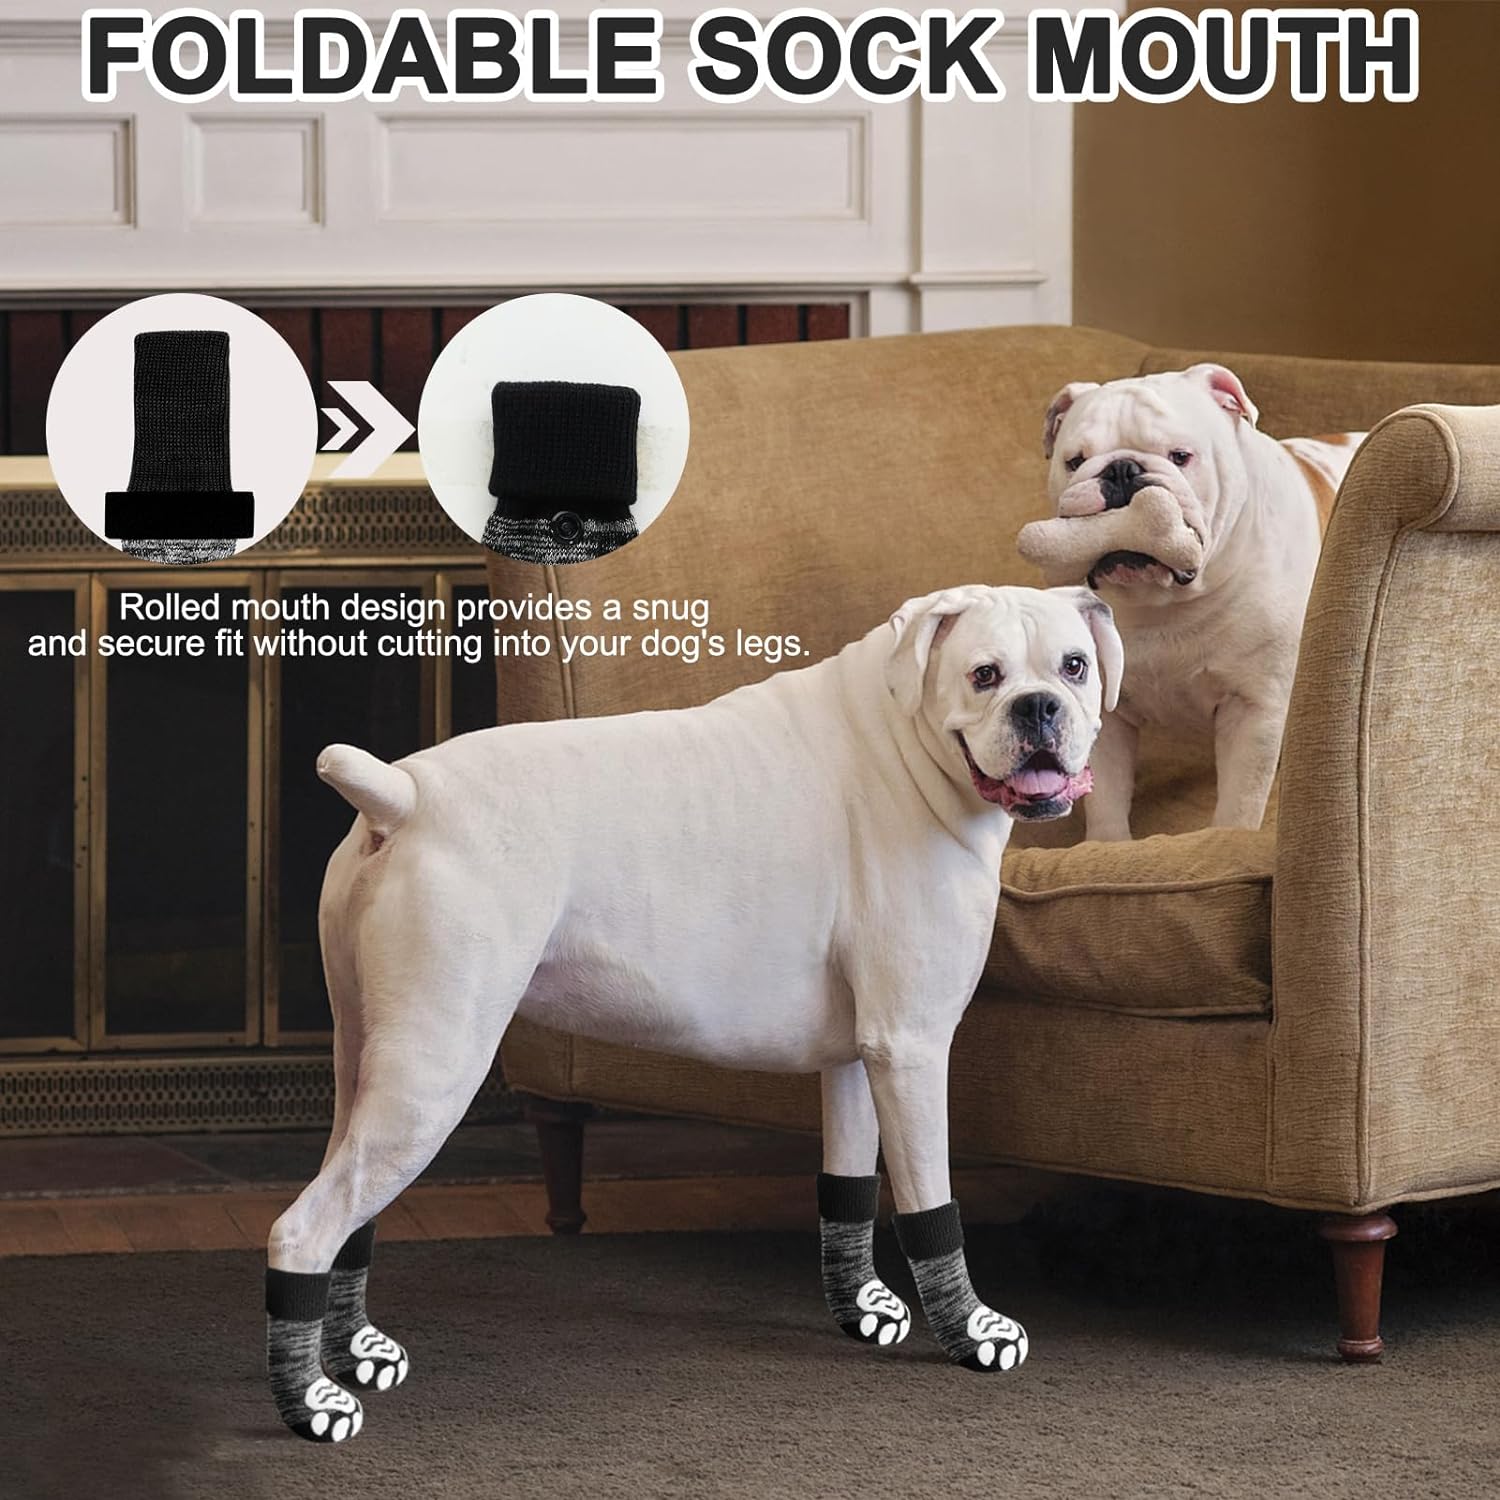 Anti-Slip Long Dog Socks for Hardwood Floors – EXPAWLORER